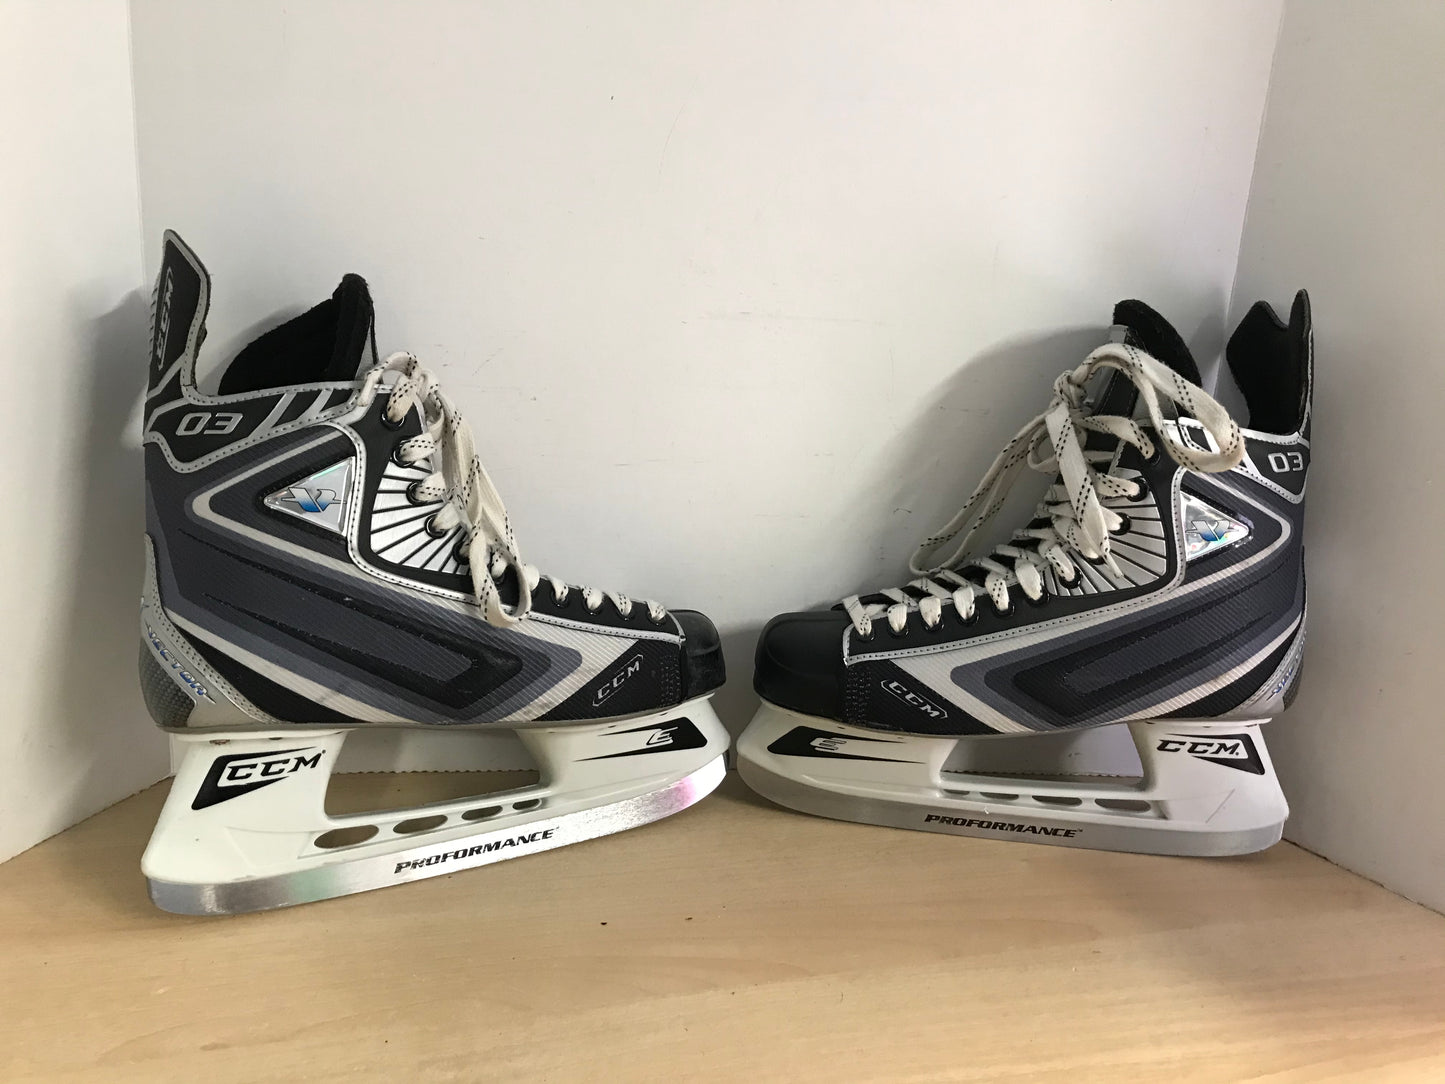 Hockey Skates Men's Size 11.5 Shoe Size CCM Vector Excellent